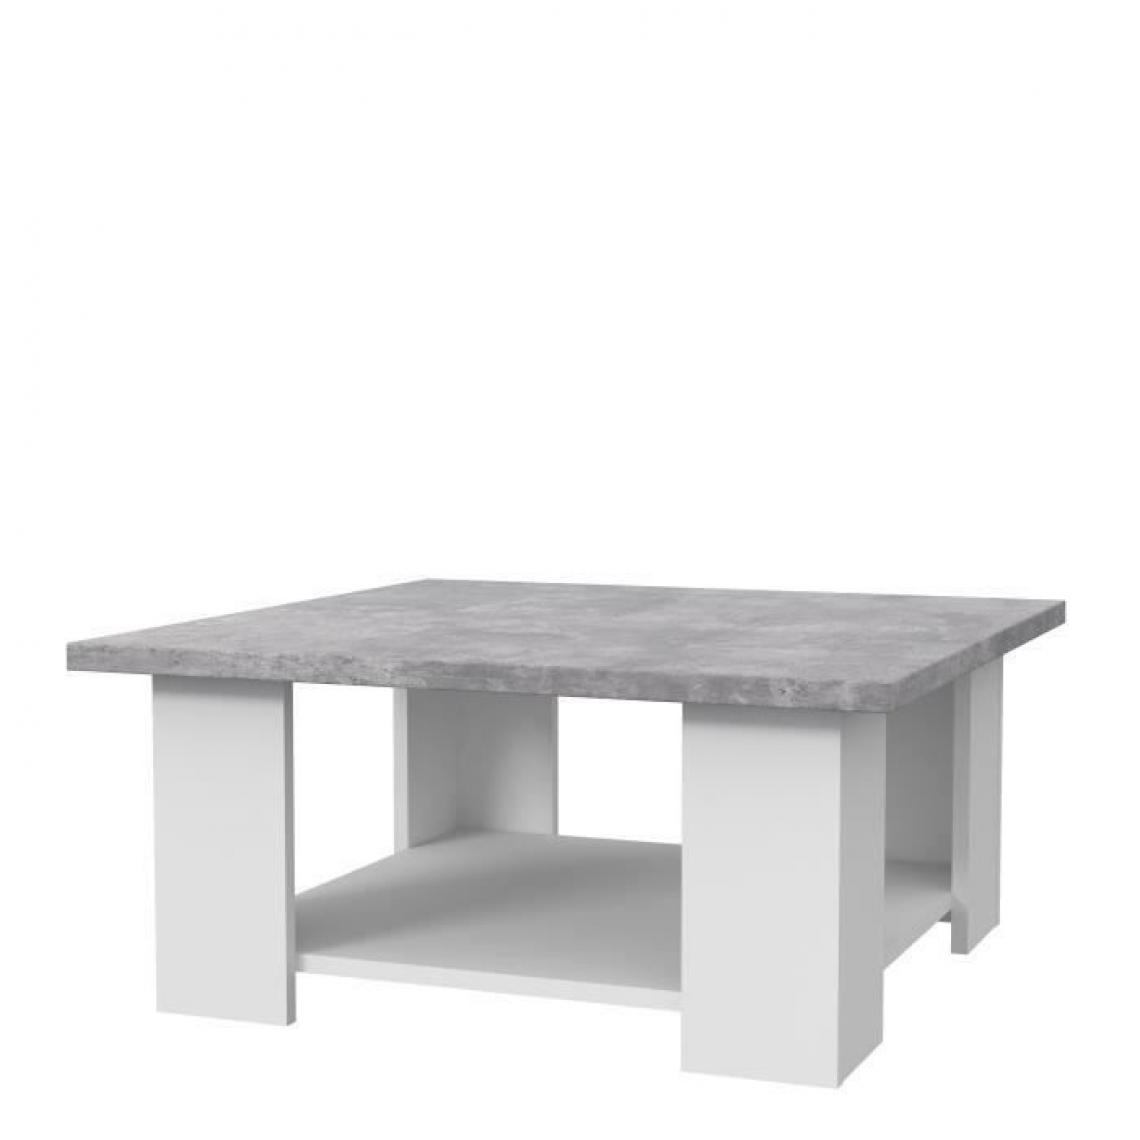 Sans Marque - PILVI Table basse - Blanc et beton gris clair - L 90 x P 90 x H 31 cm - Tables basses